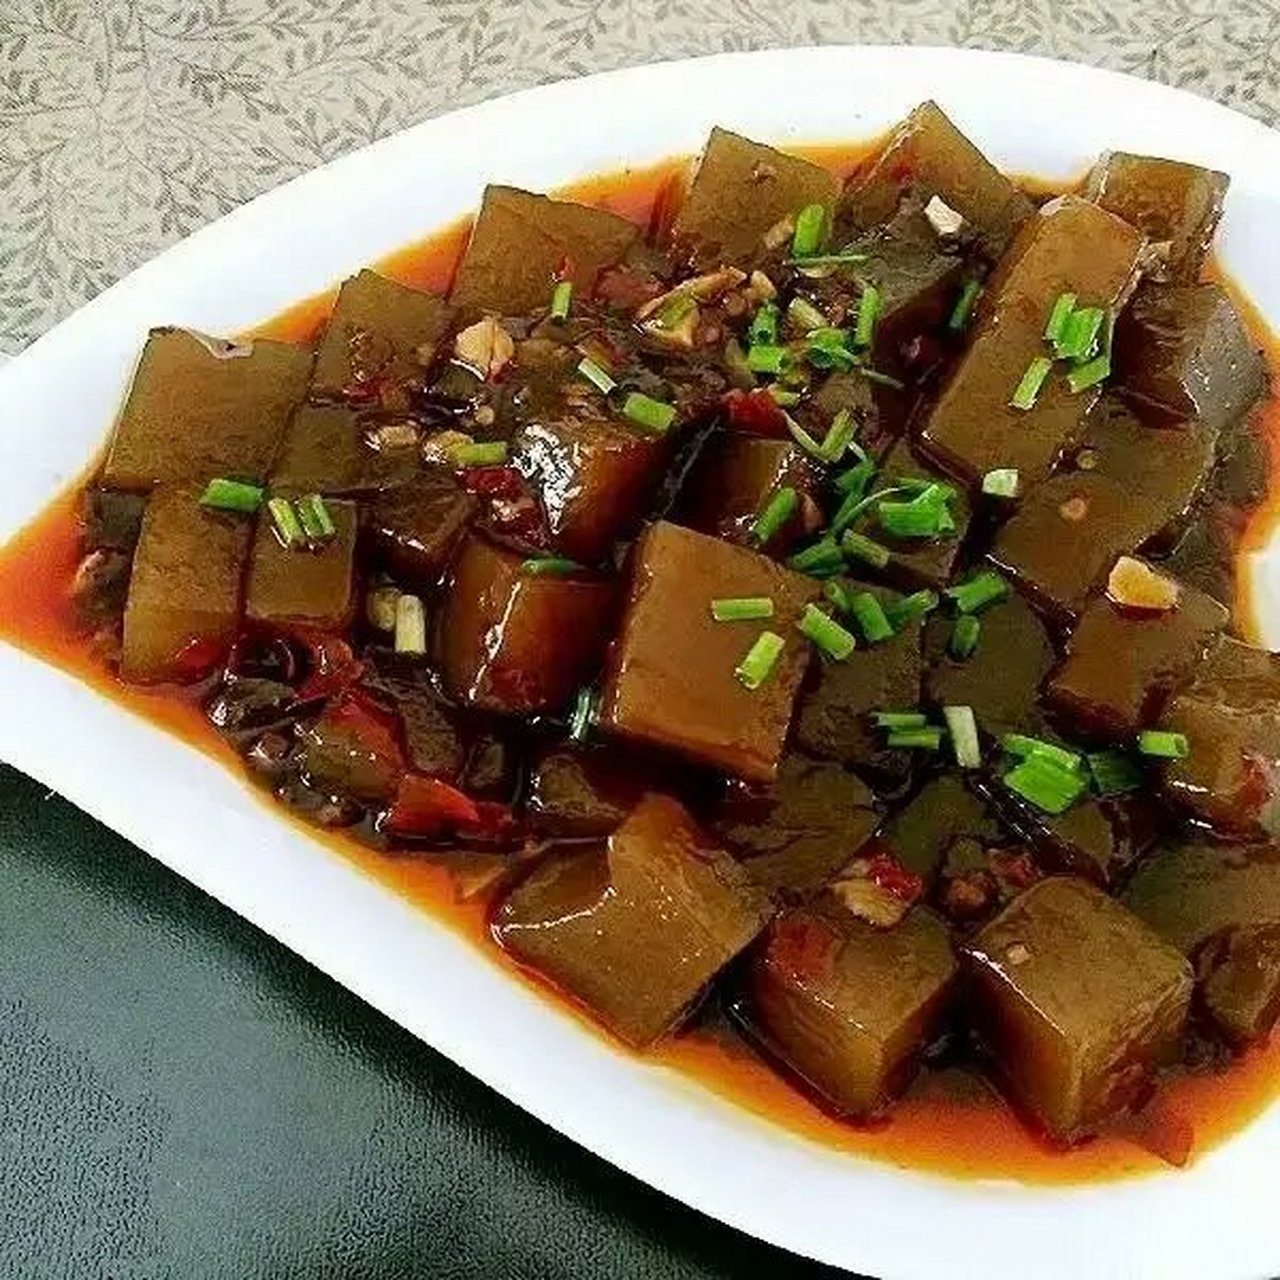 来我的家乡玩吧 红烧苦槠豆腐是最自然古朴的 也是瑶里非常天然的